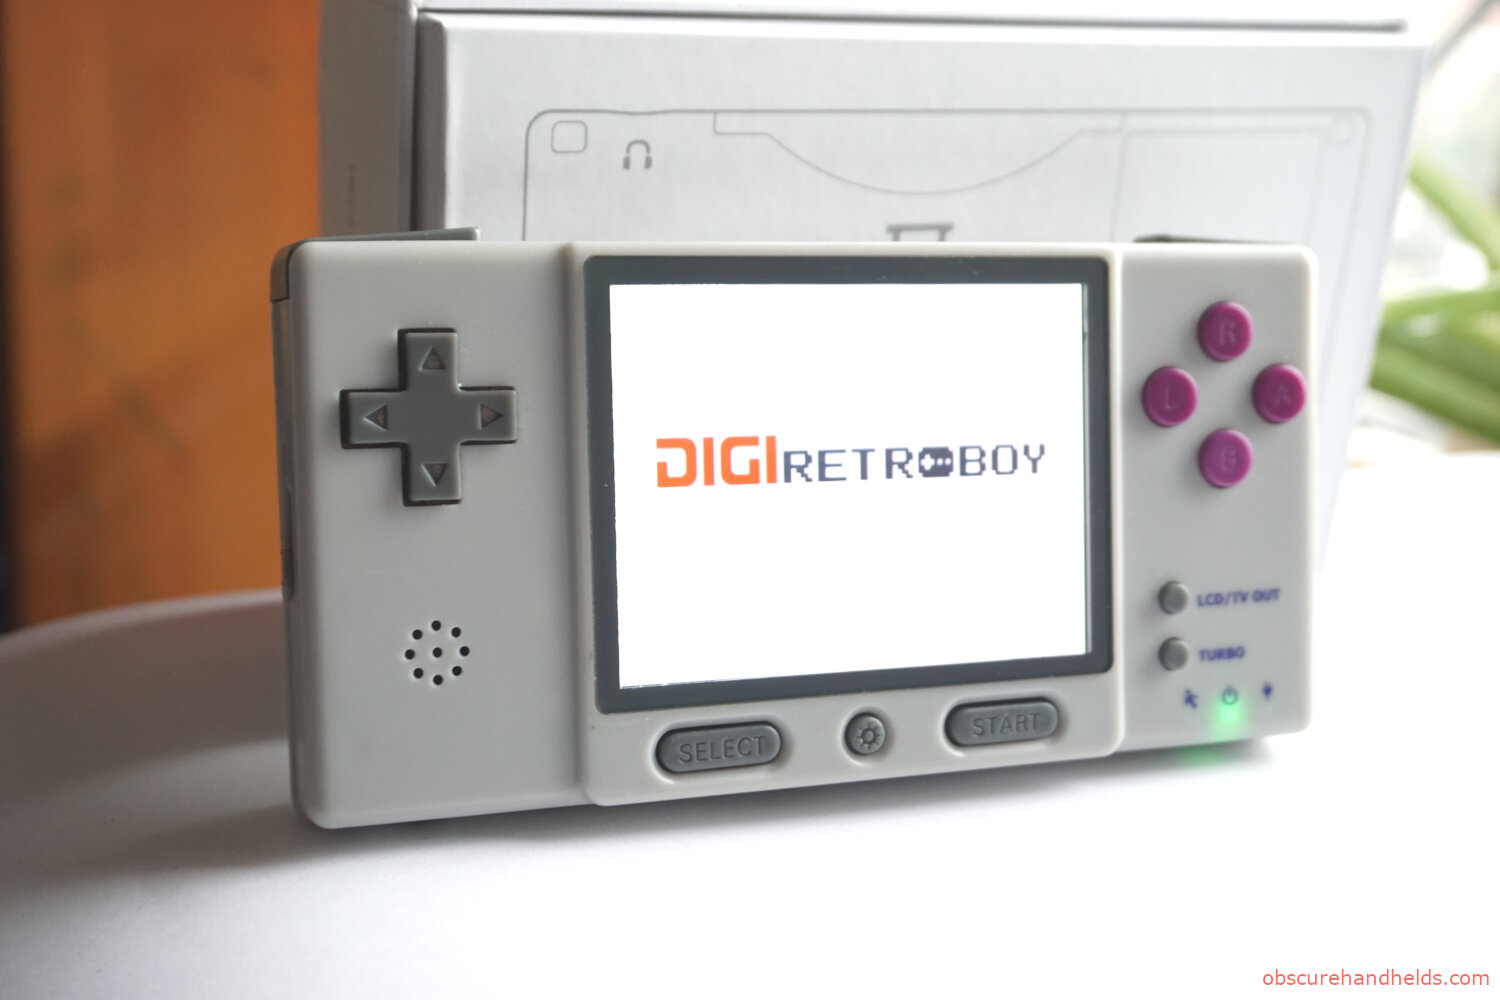 The Digi RetroBoy GBA Clone